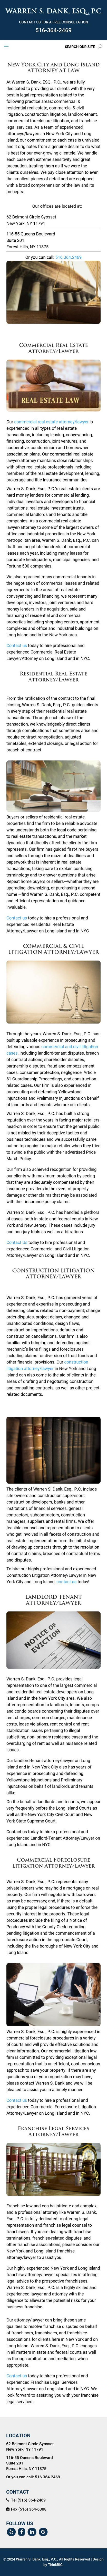 Warren S. Dank - Forest Hills NY Lawyers